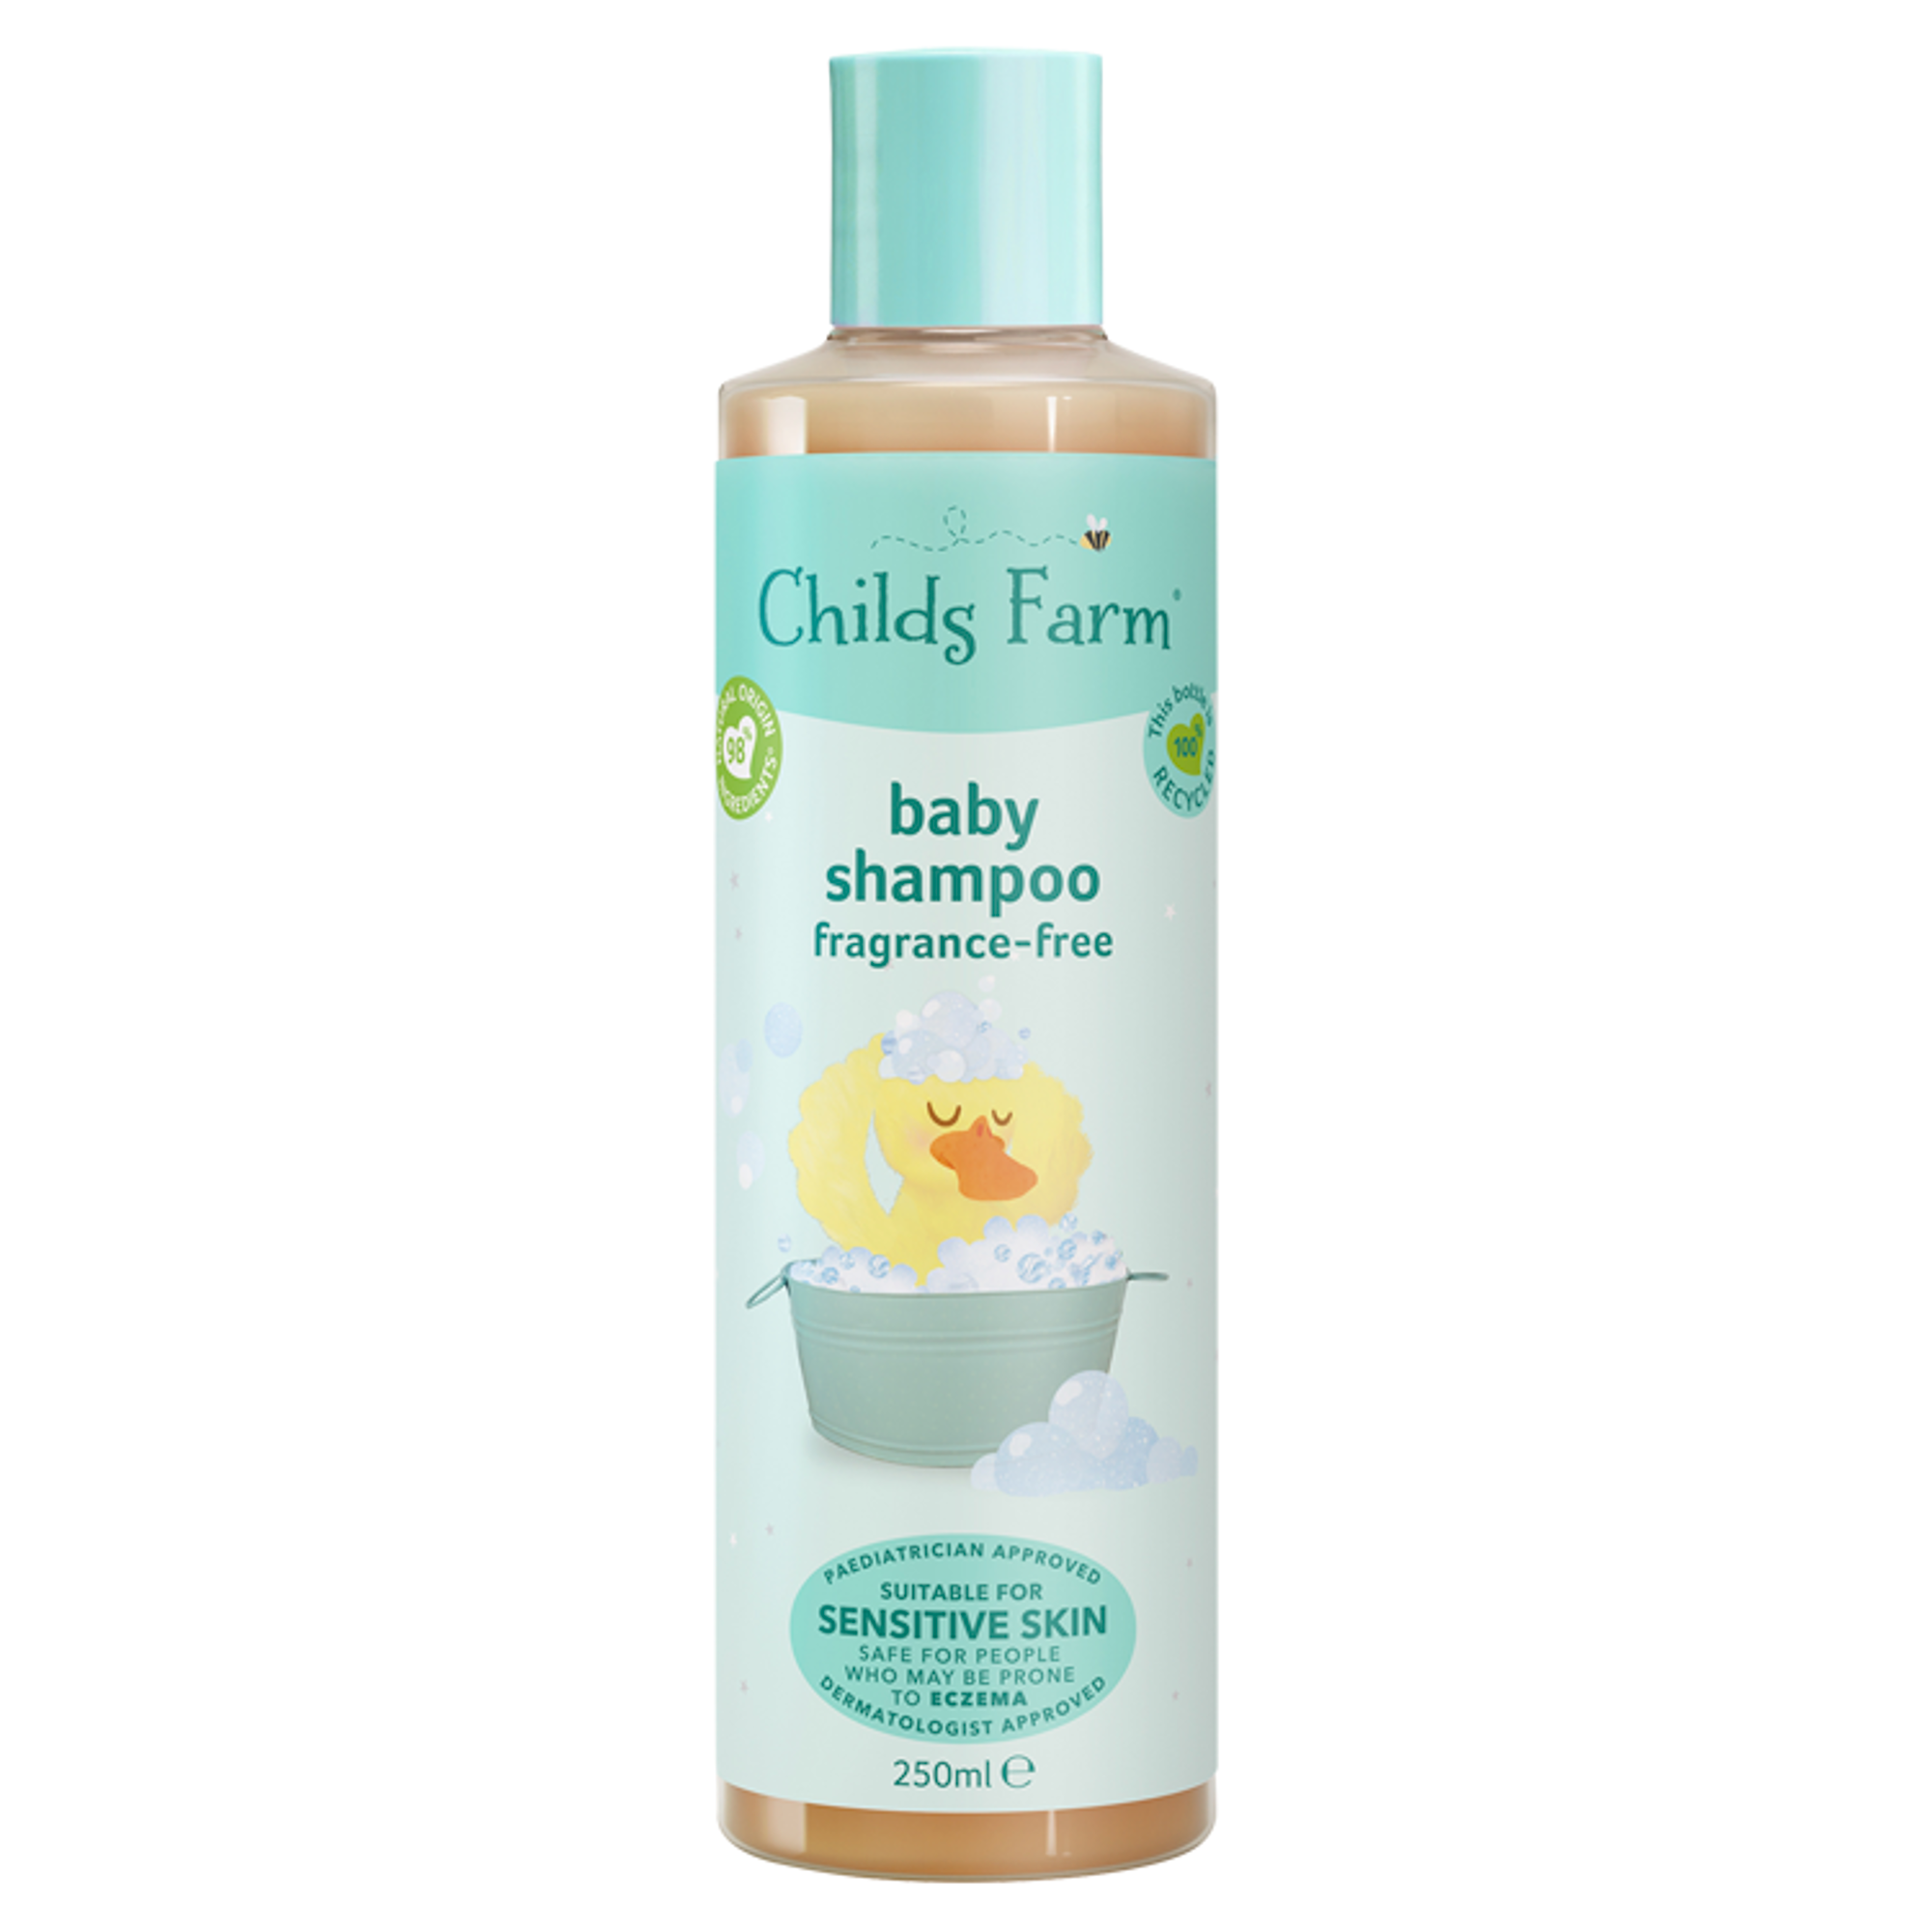 Childs Farm Baby Shampoo Unfragranced 250ml